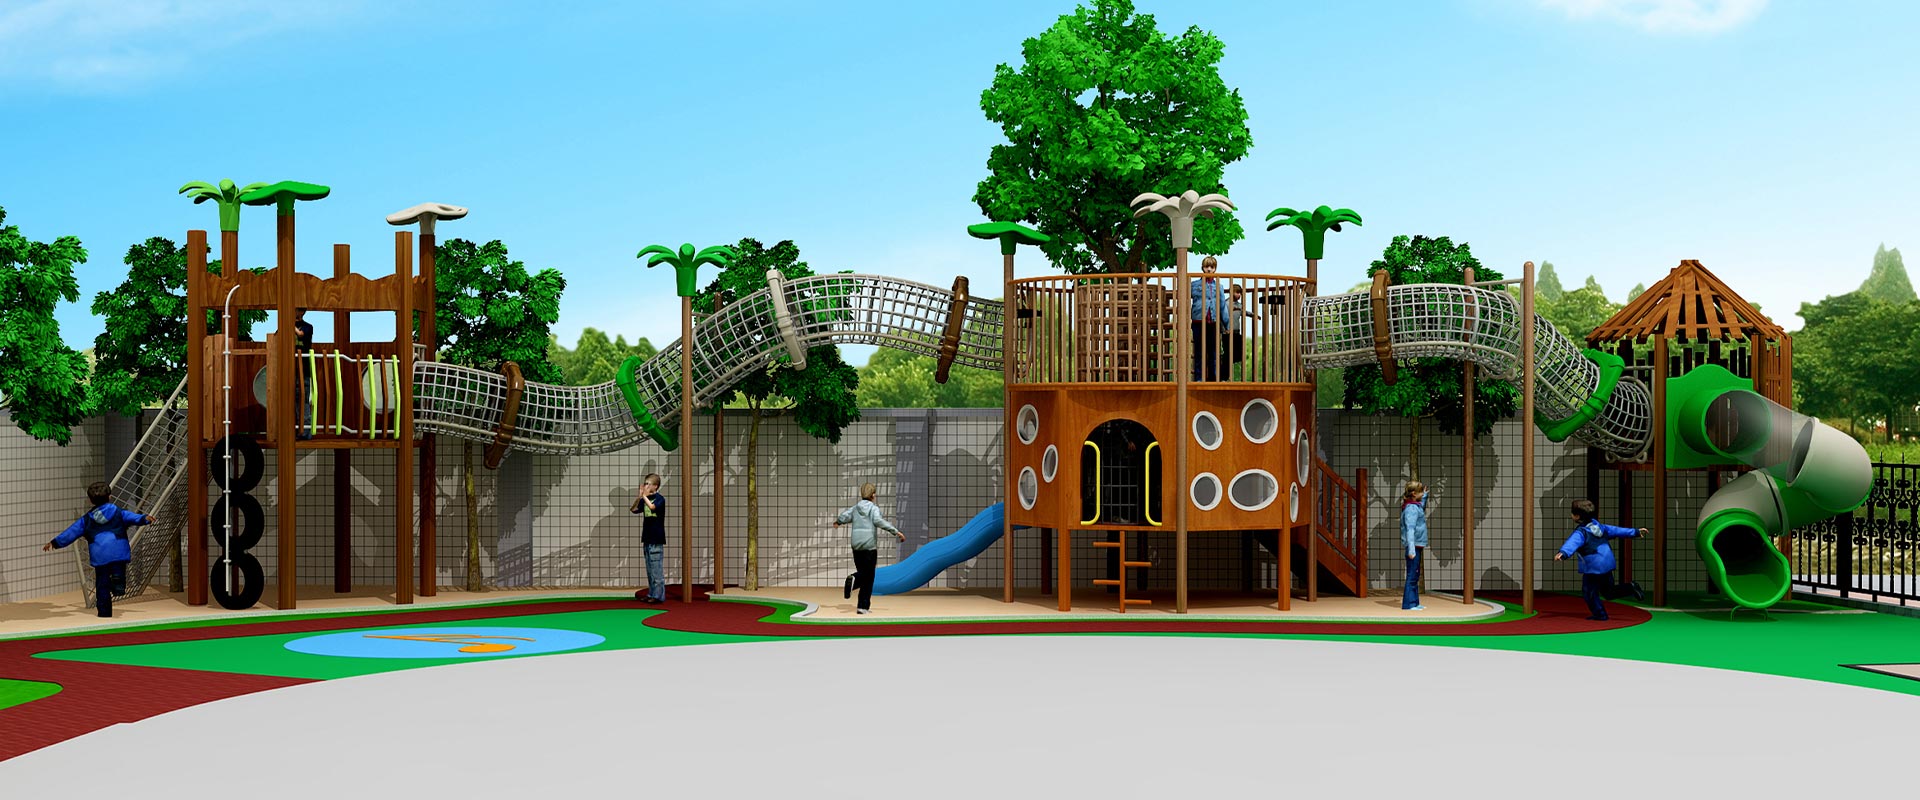 欢乐岛康体设备,幼儿园组合滑梯,多功能组合滑梯厂家